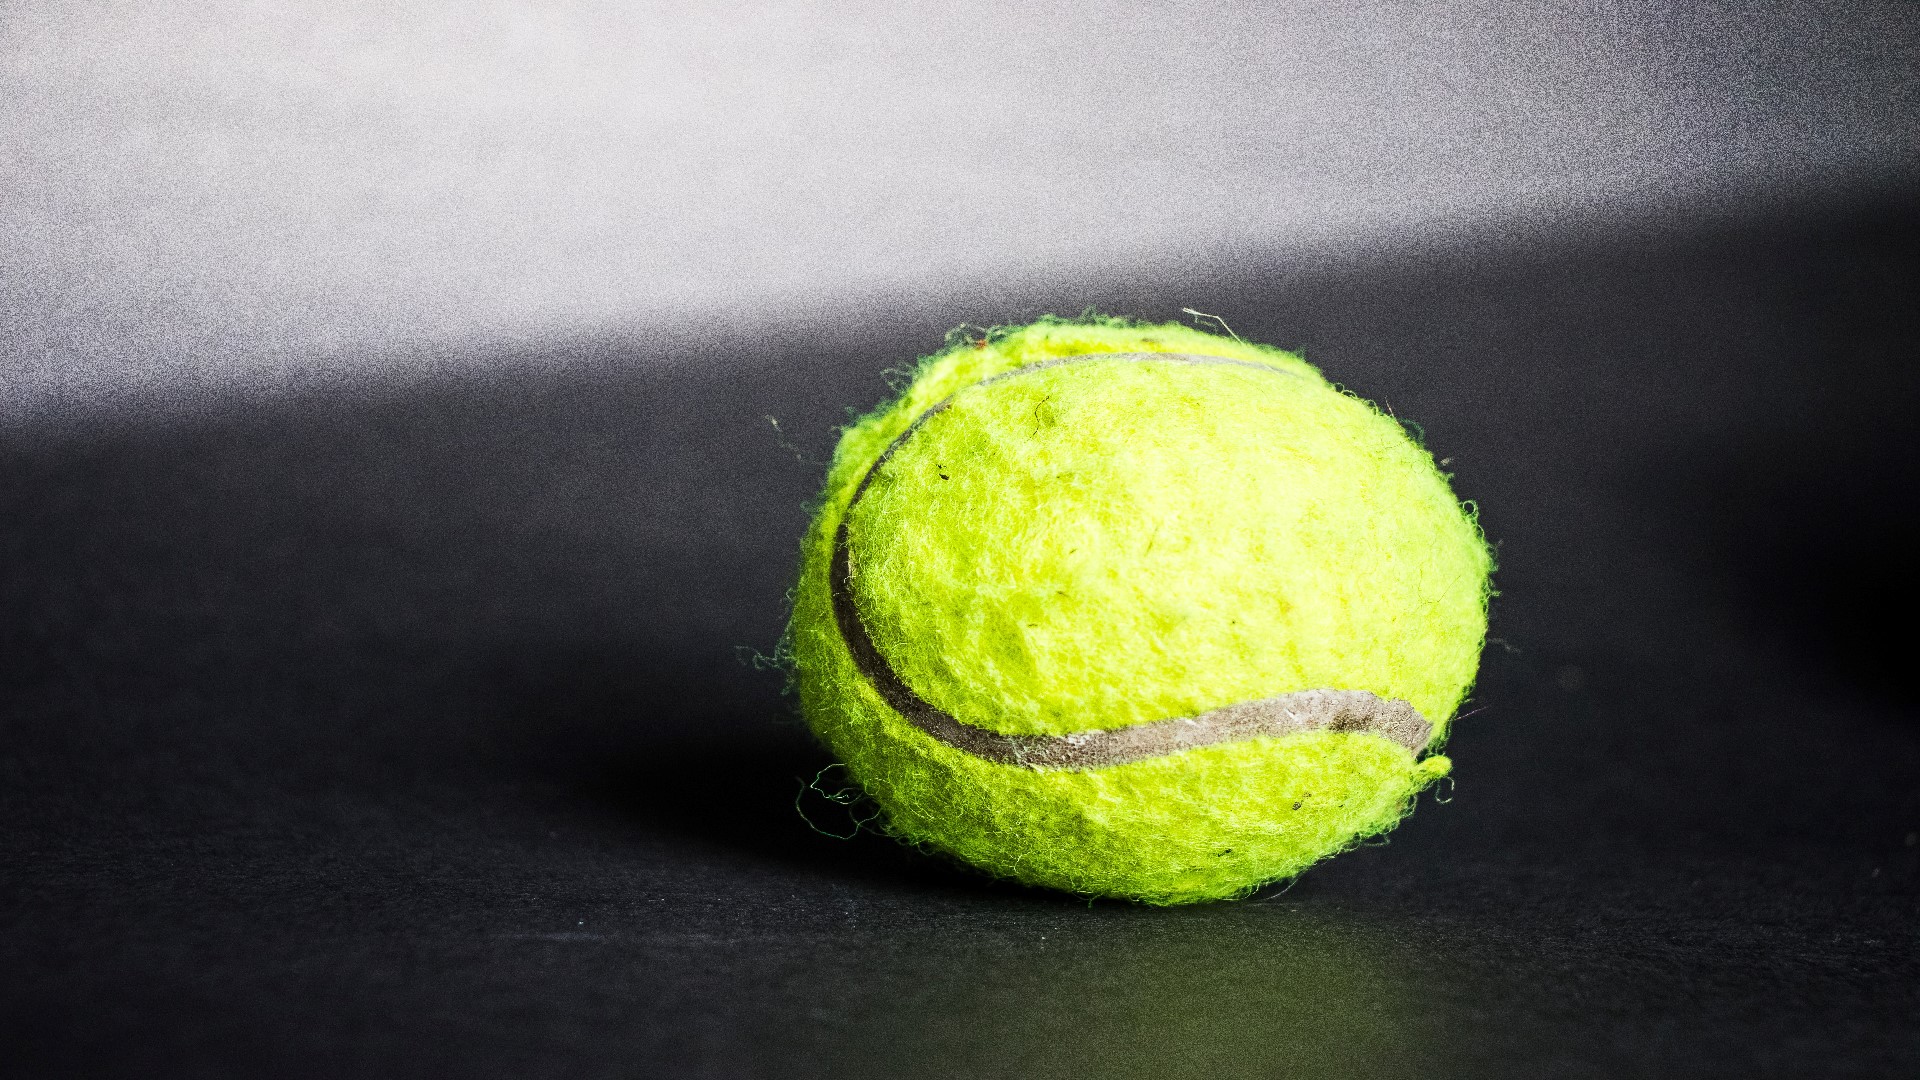 An image of a tennis ball)